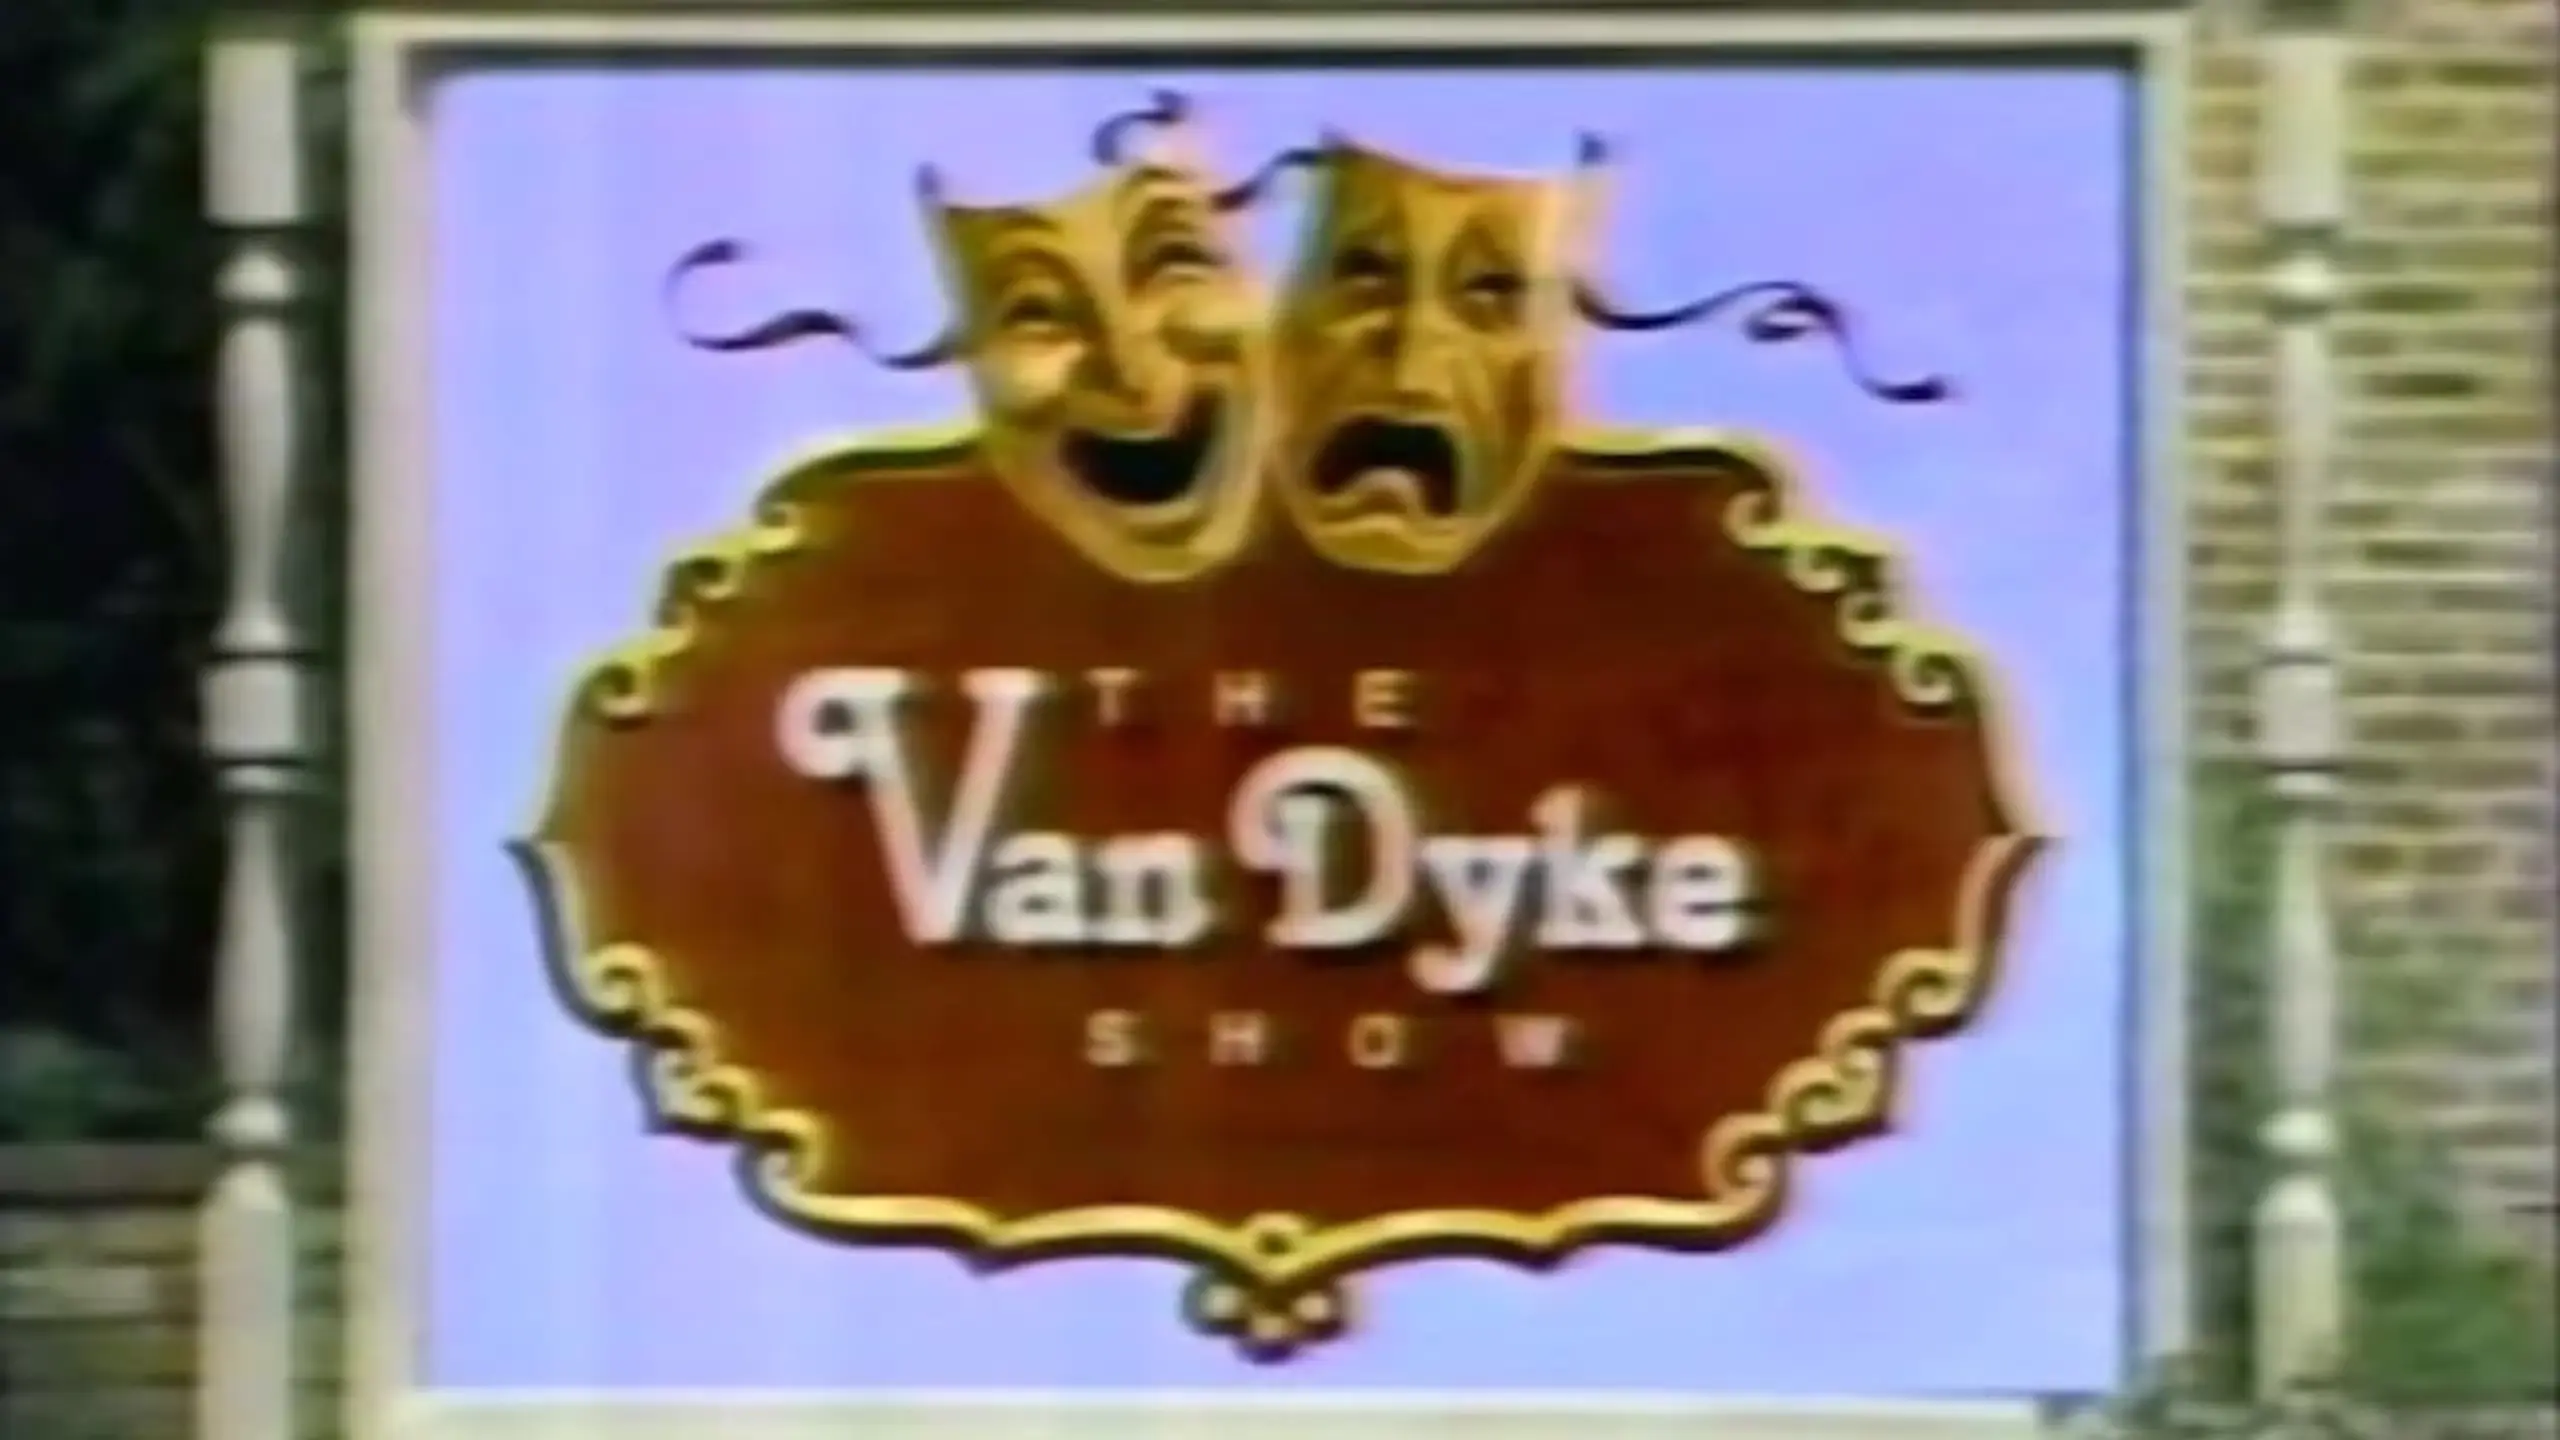 The Van Dyke Show